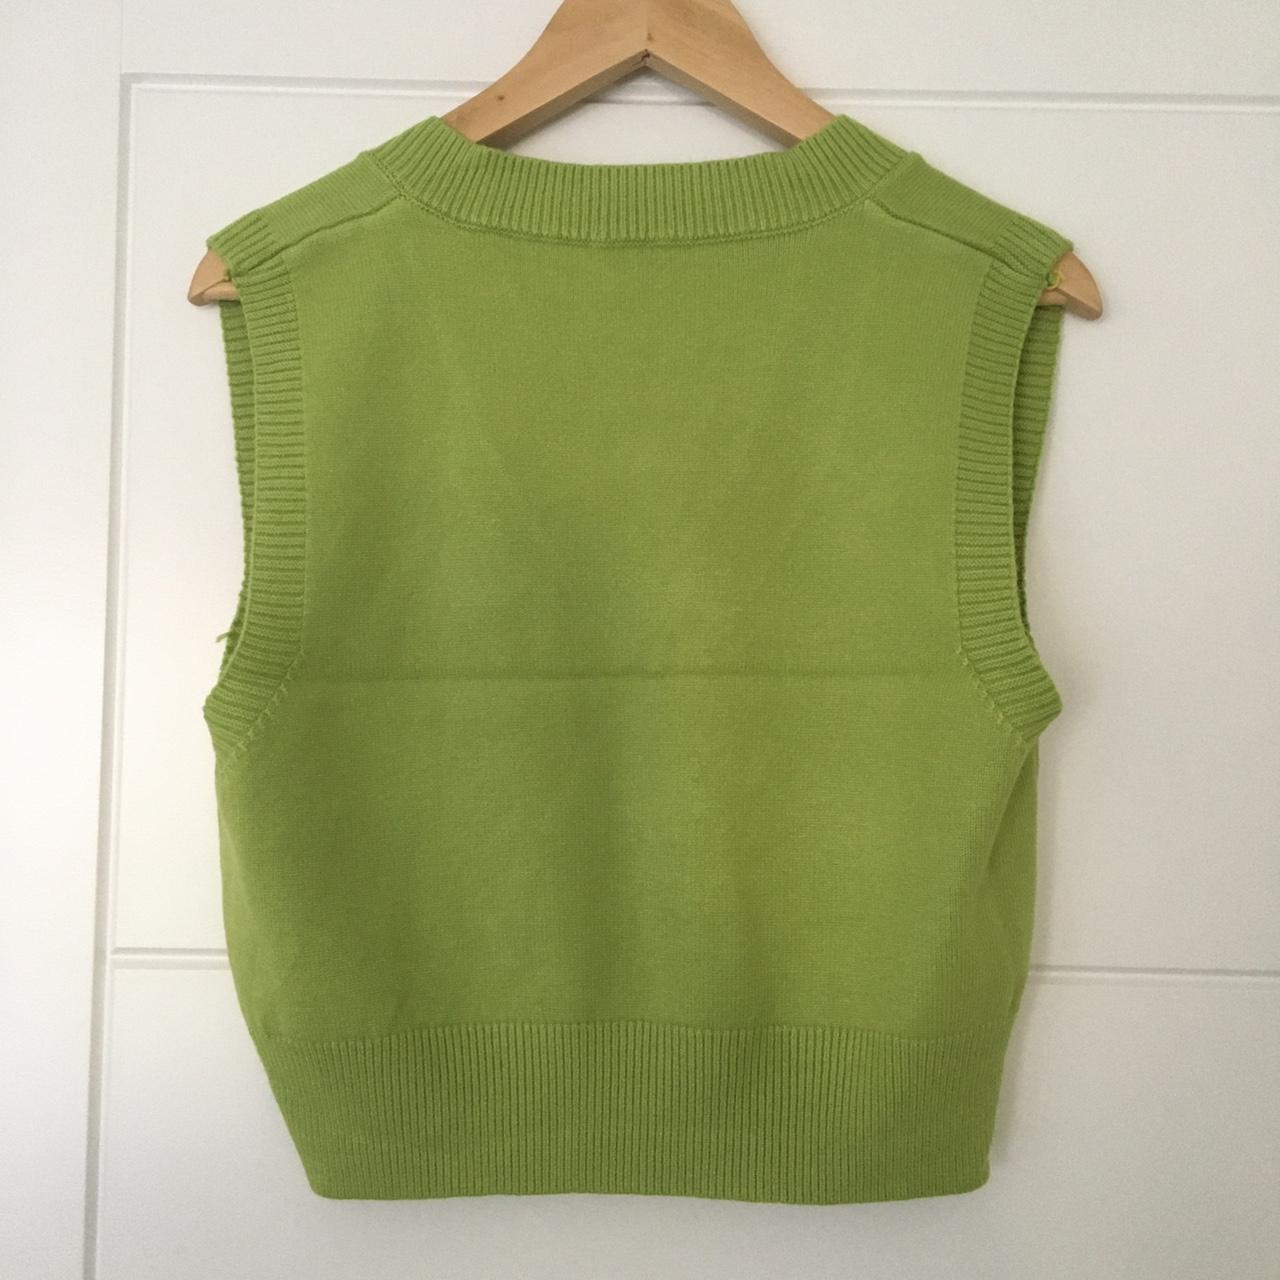 Plain olive green sweater vest v-neck knitwear... - Depop